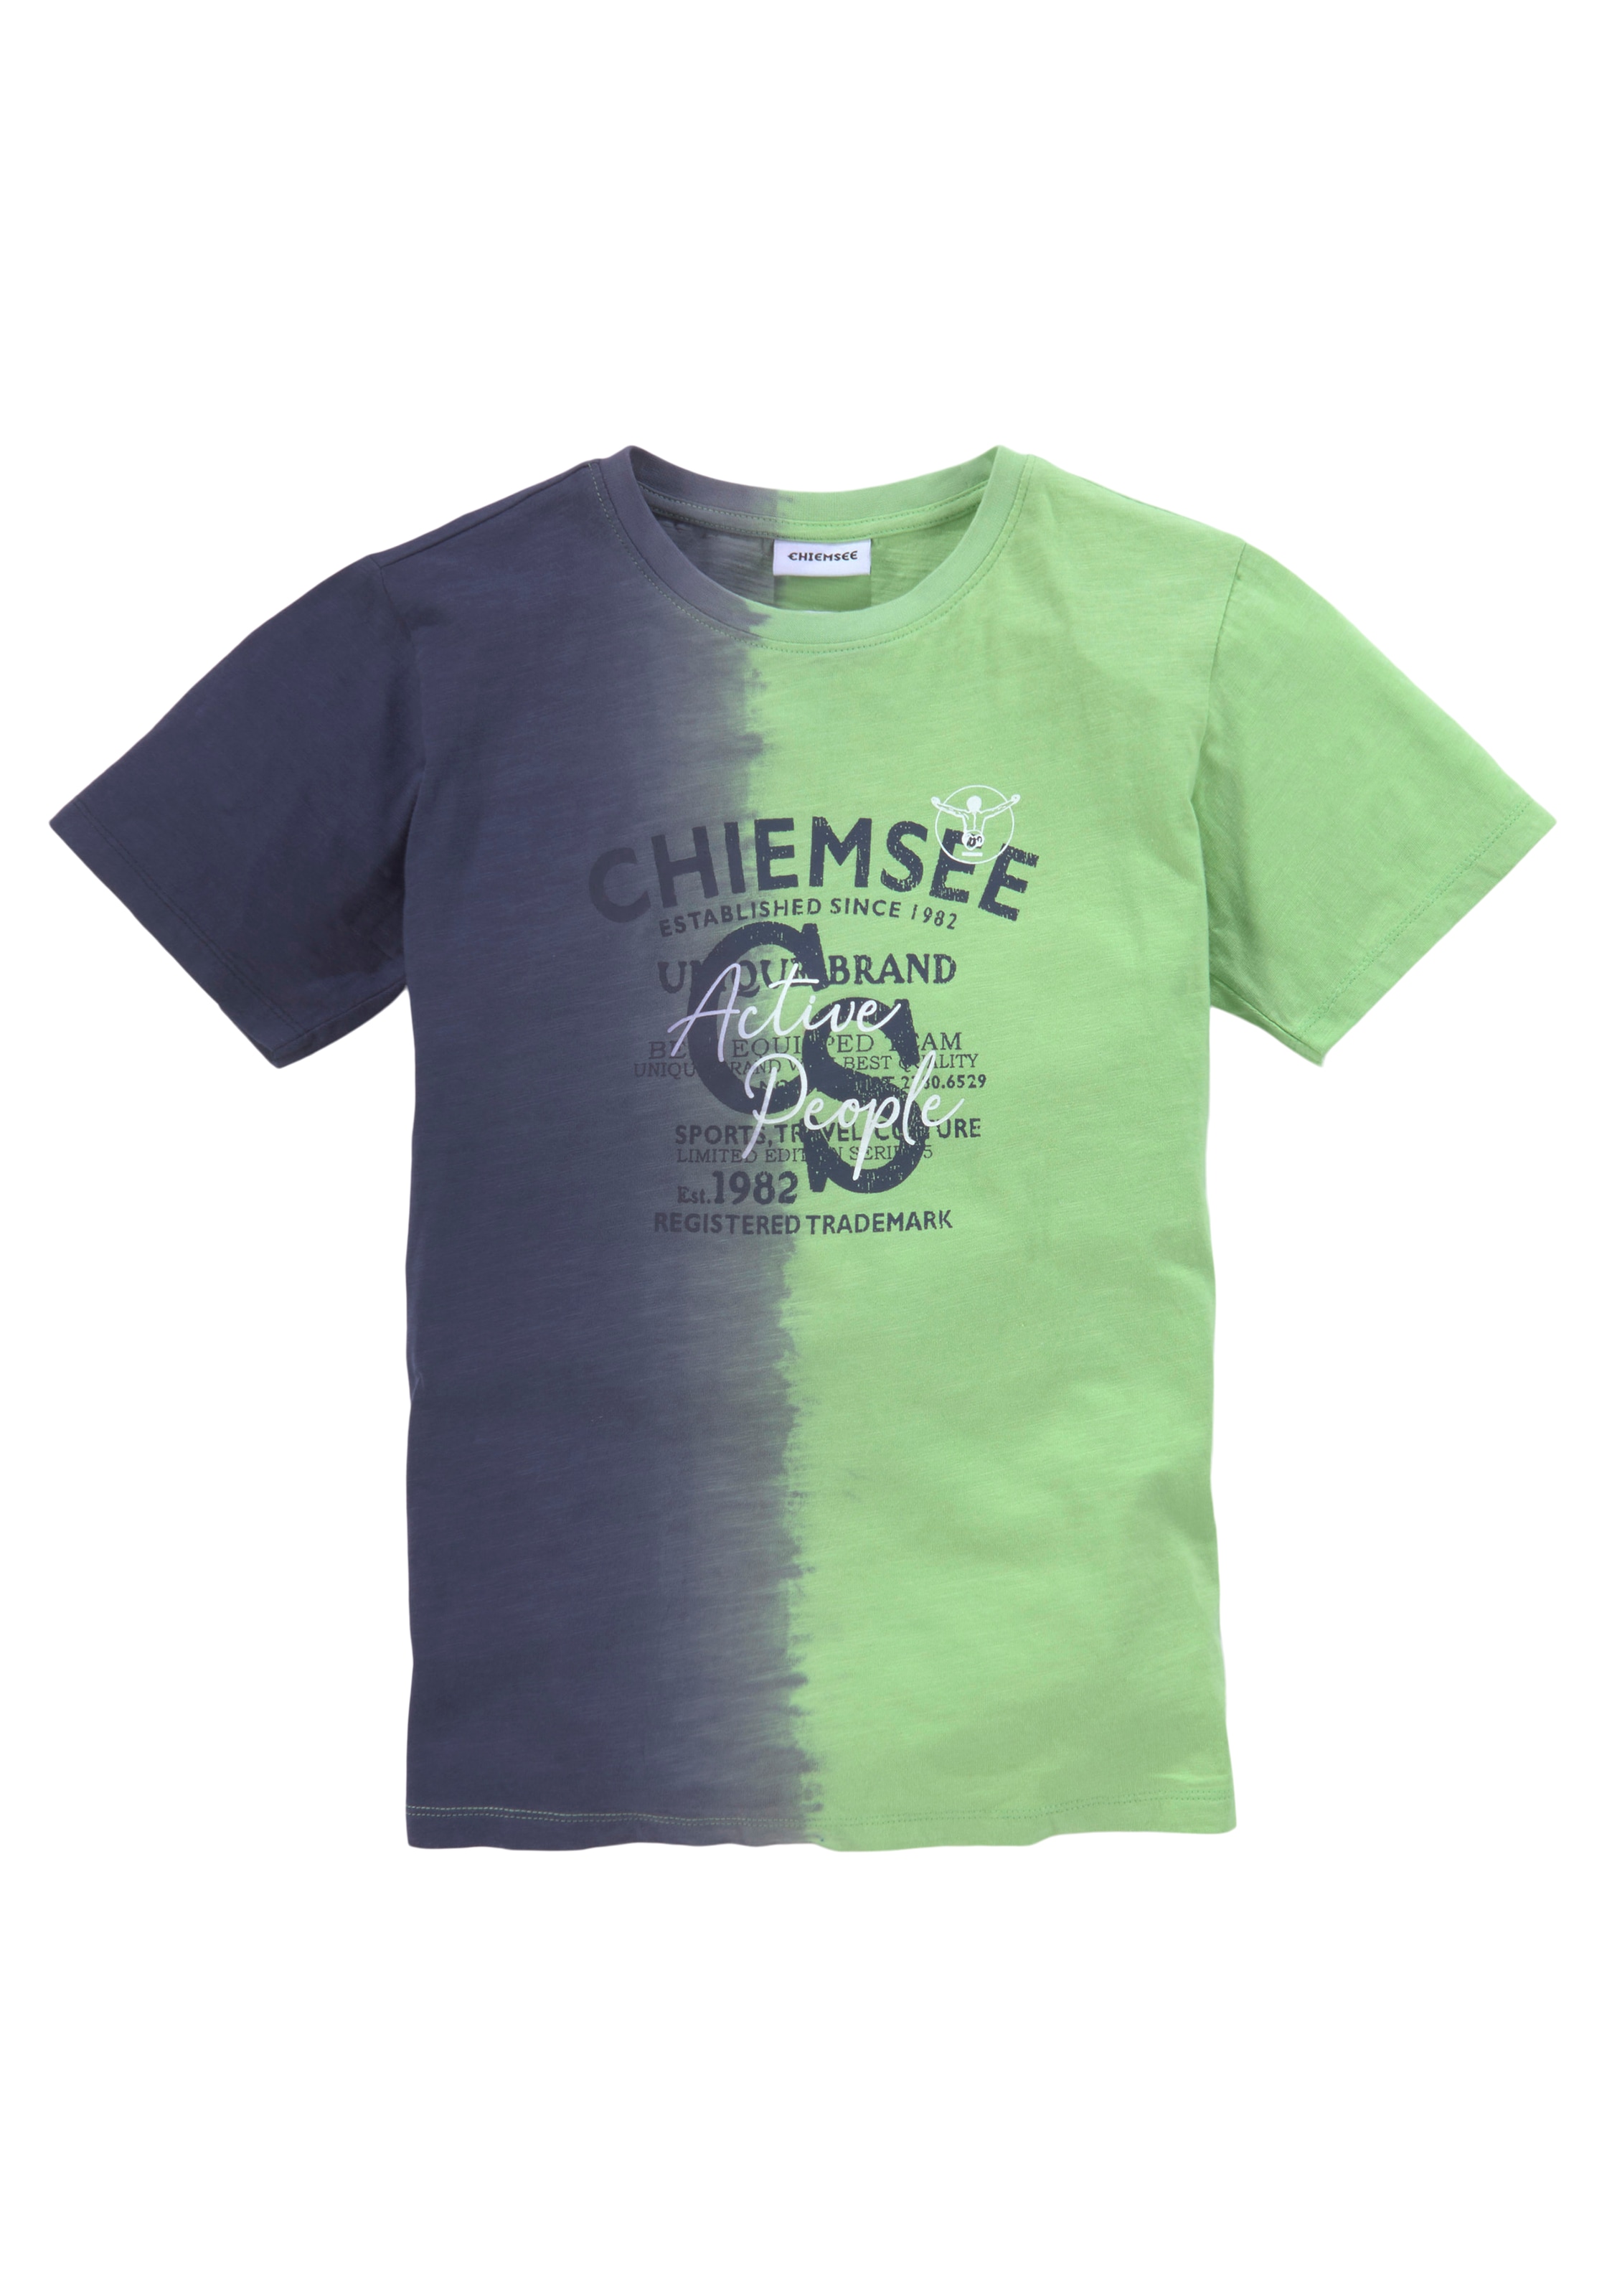 versandkostenfrei vertikalem »Farbverlauf«, Chiemsee Farbverlauf auf mit T-Shirt